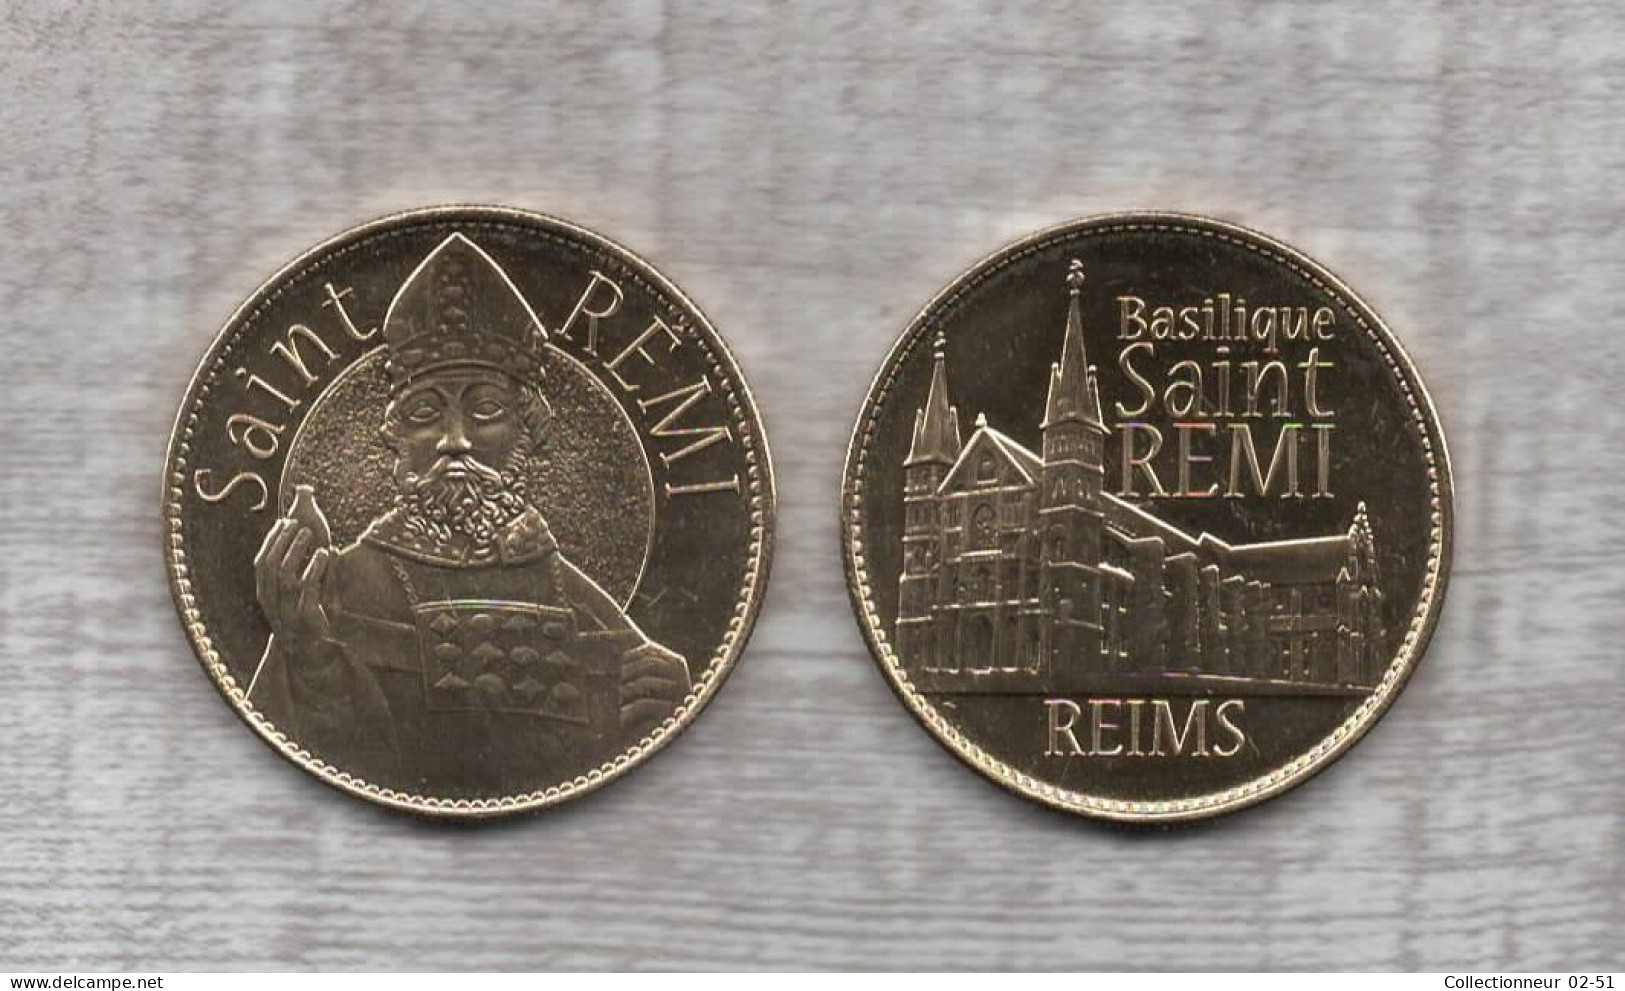 Médaille Arthus Bertrand : Basilique Saint-Rémi - Reims - - Ohne Datum